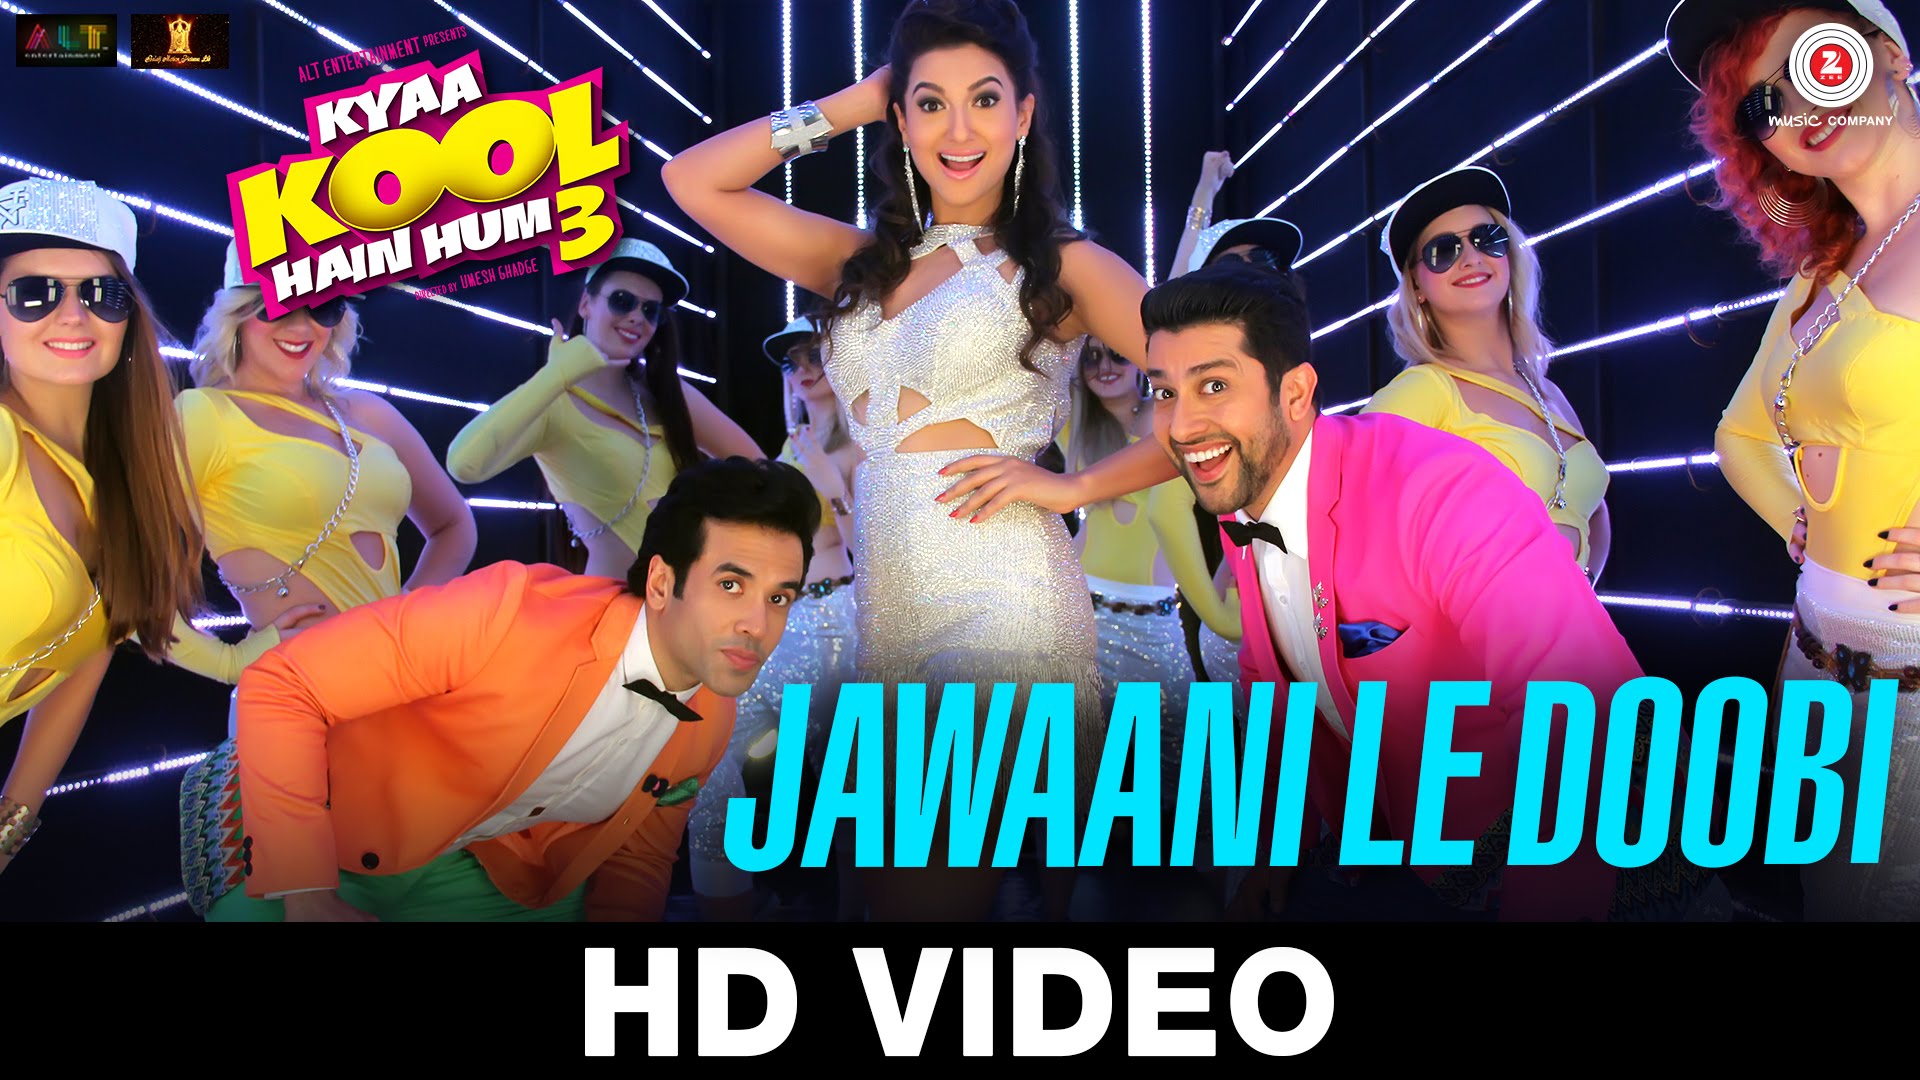 Jawaani Le Doobi | First song from Kya Kool Hain Hum 3 is here